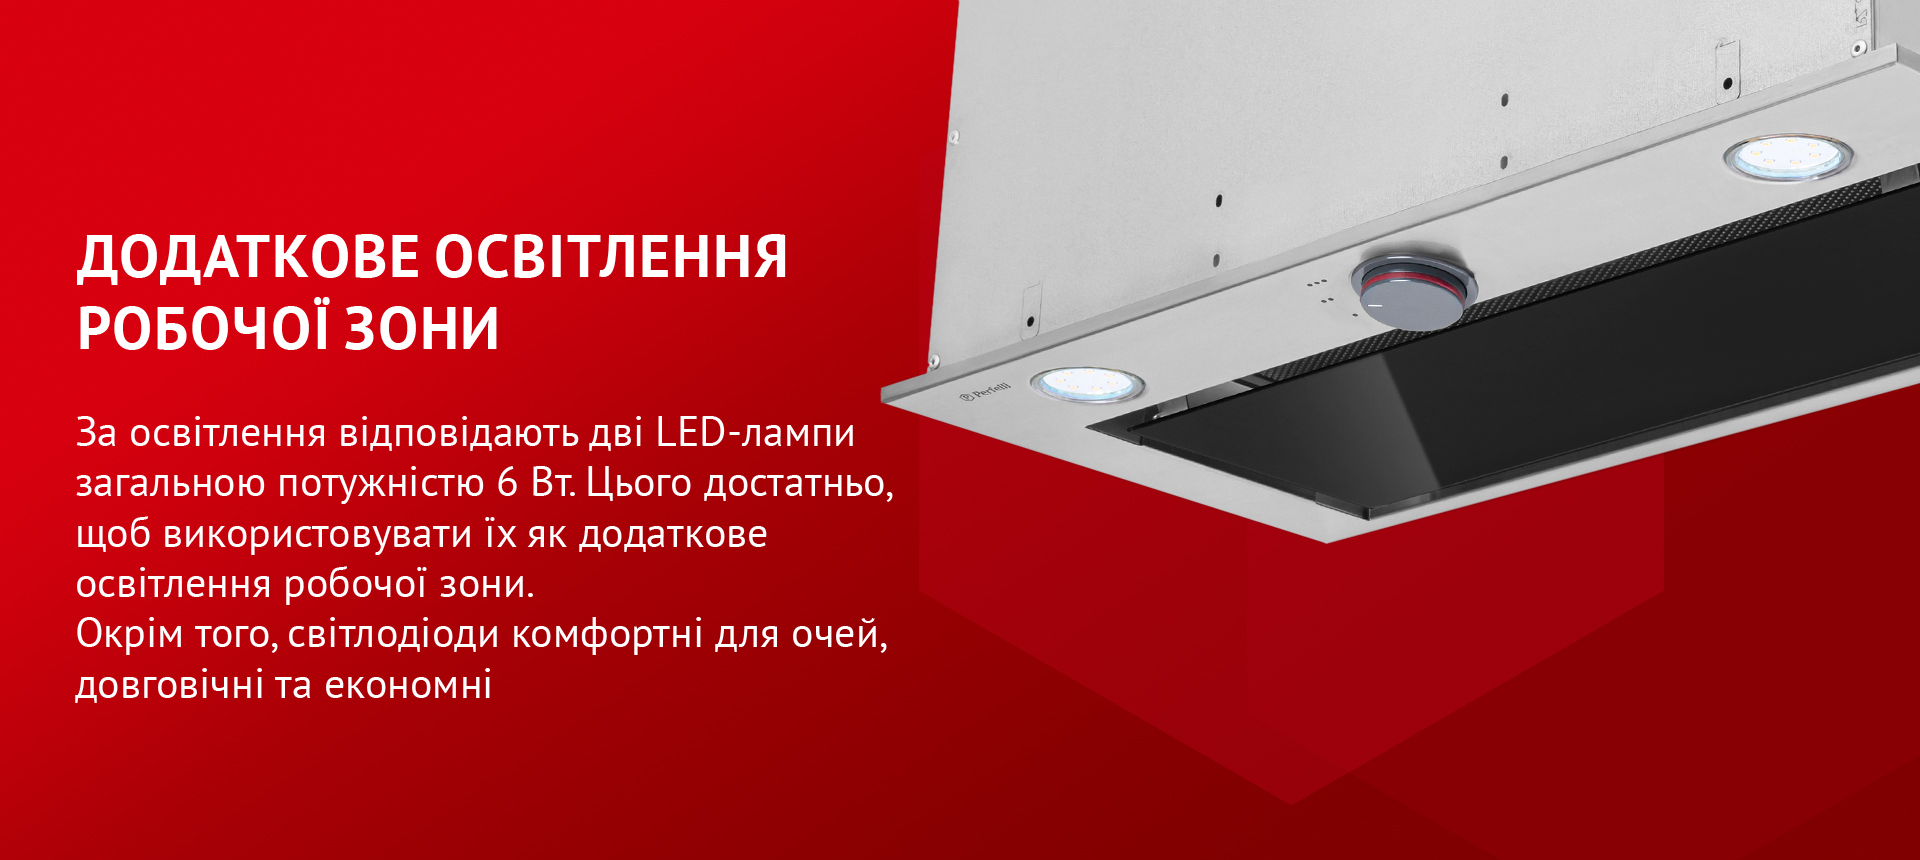 За освітлення відповідають дві LED-лампи загальною потужністю 6 Вт. Цього достатньо, щоб використовувати їх як додаткове освітлення робочої зони. Окрім того, світлодіоди комфортні для очей, довговічні та економні